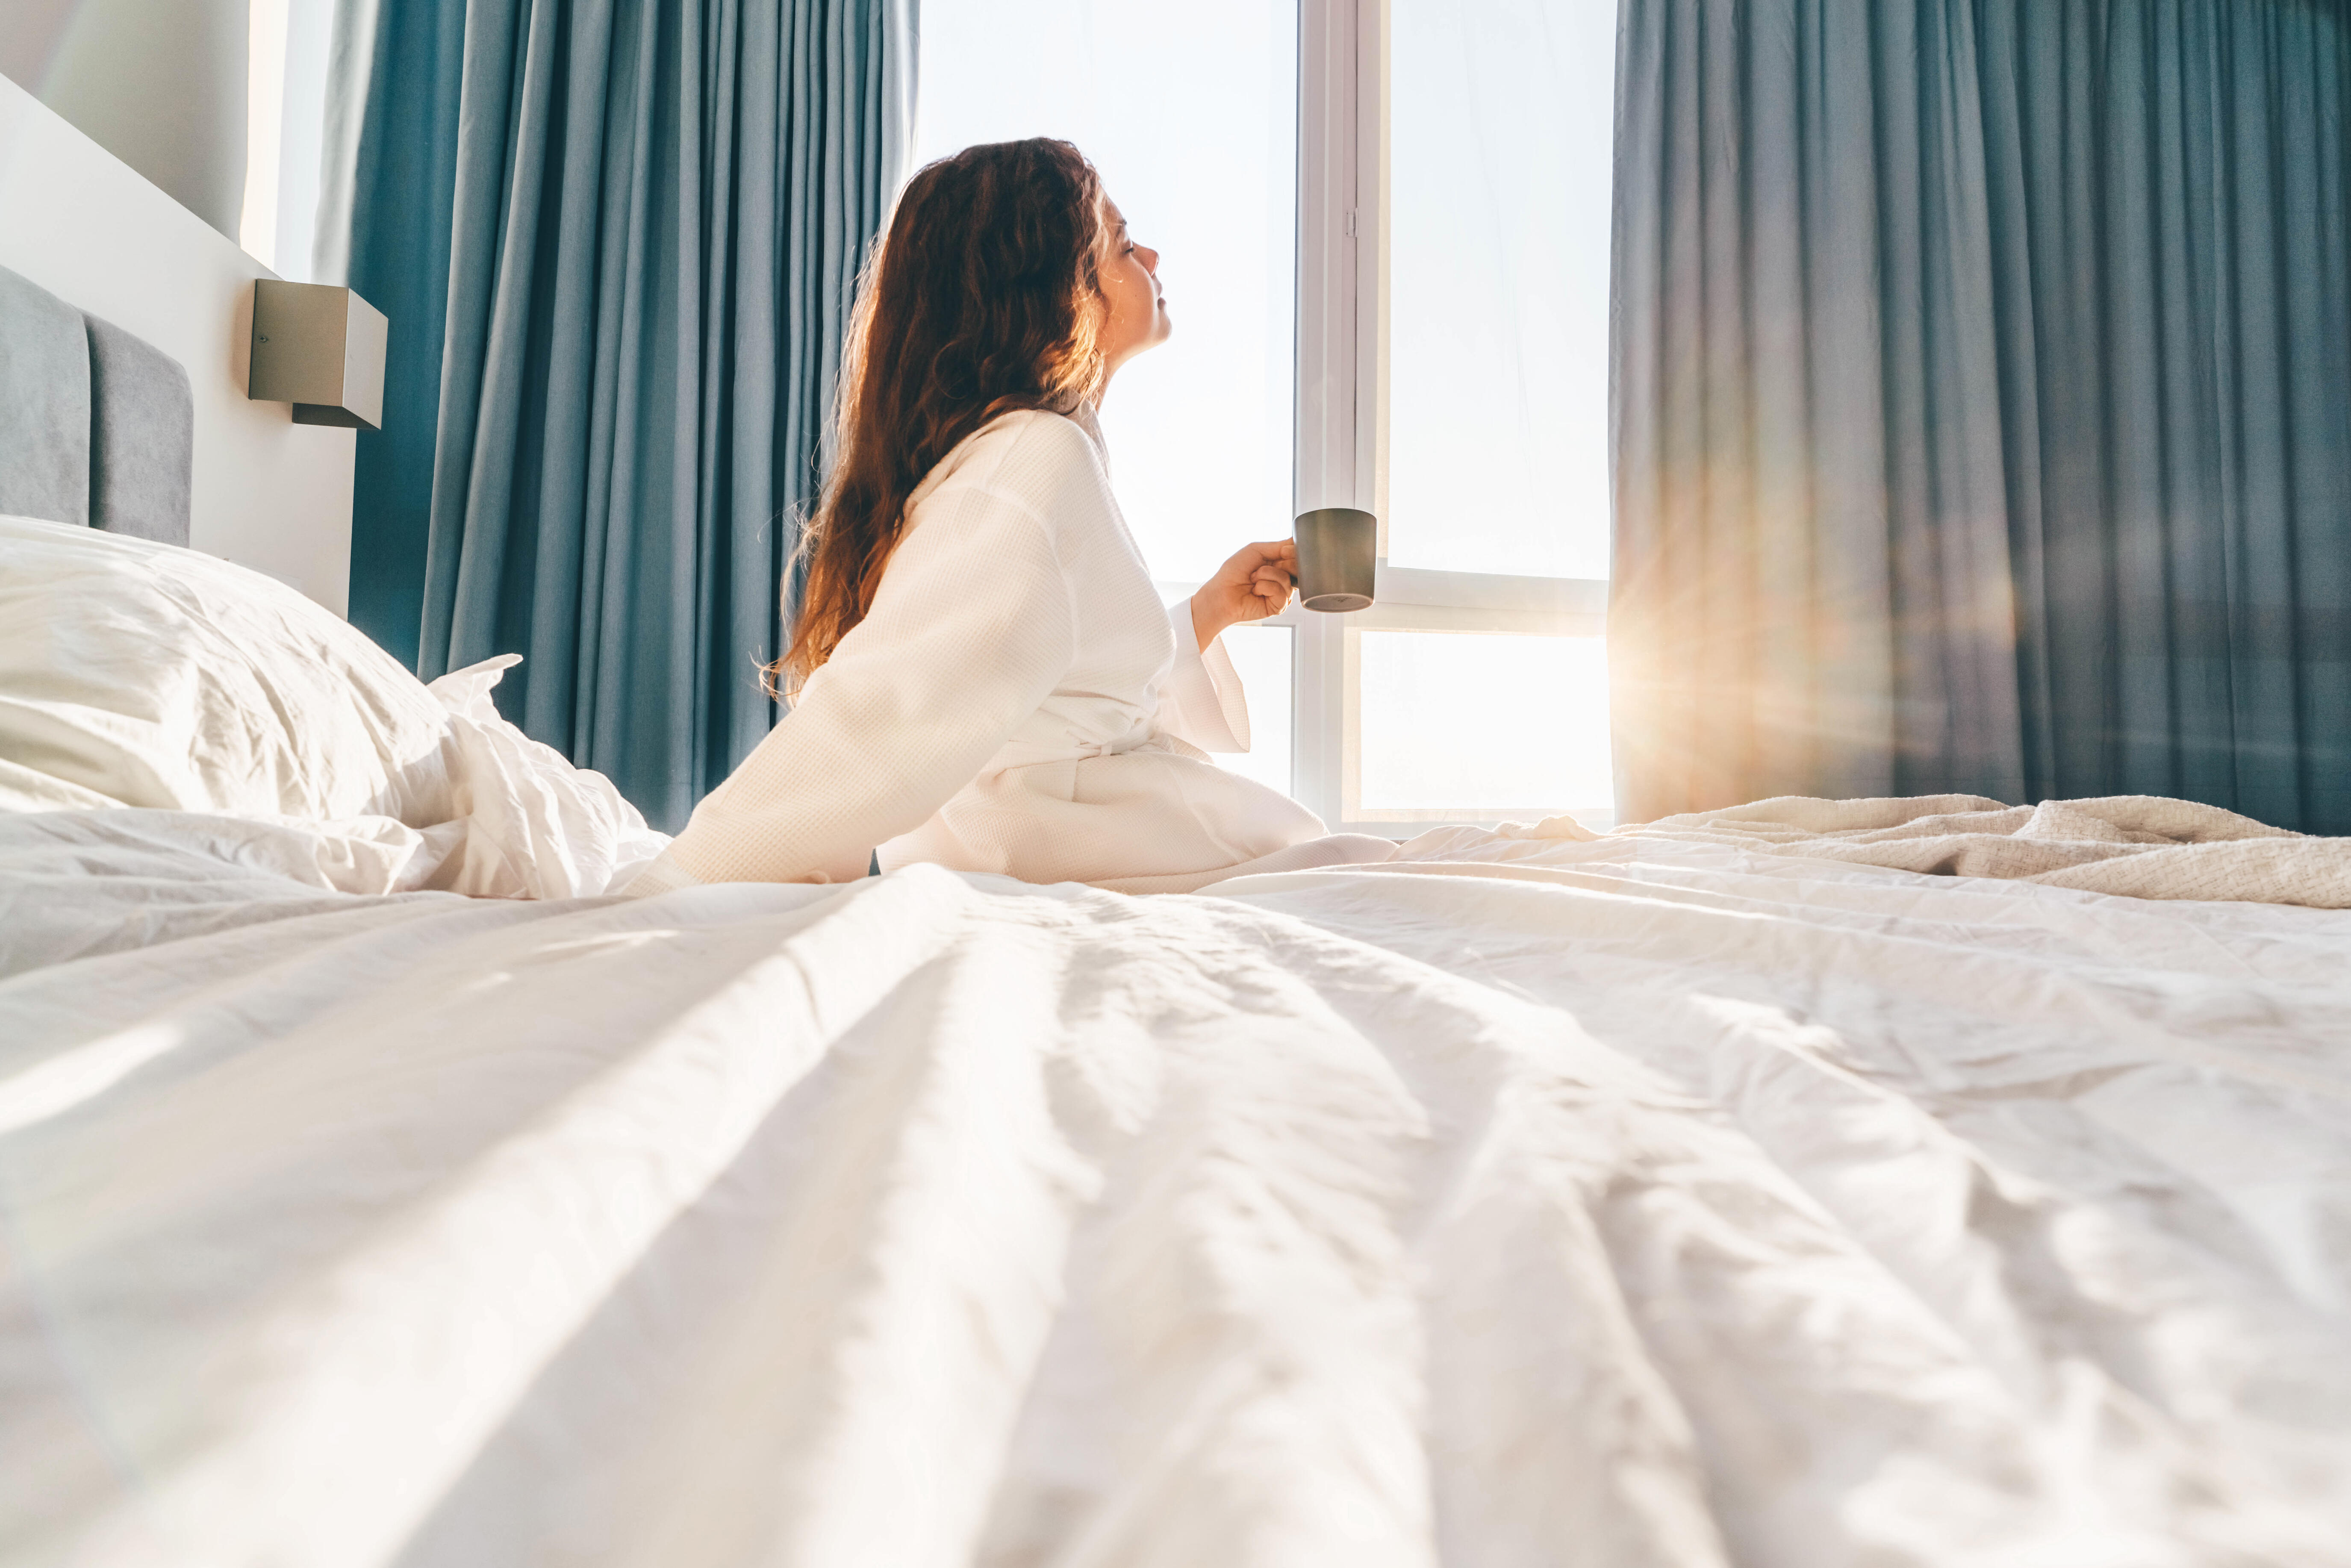 Рано встаешь дорогой. Просыпаться рано. Идеи для фотосессии женщины в солнечной постели. Постель Солнечный свет. Трудно вставать по утрам.